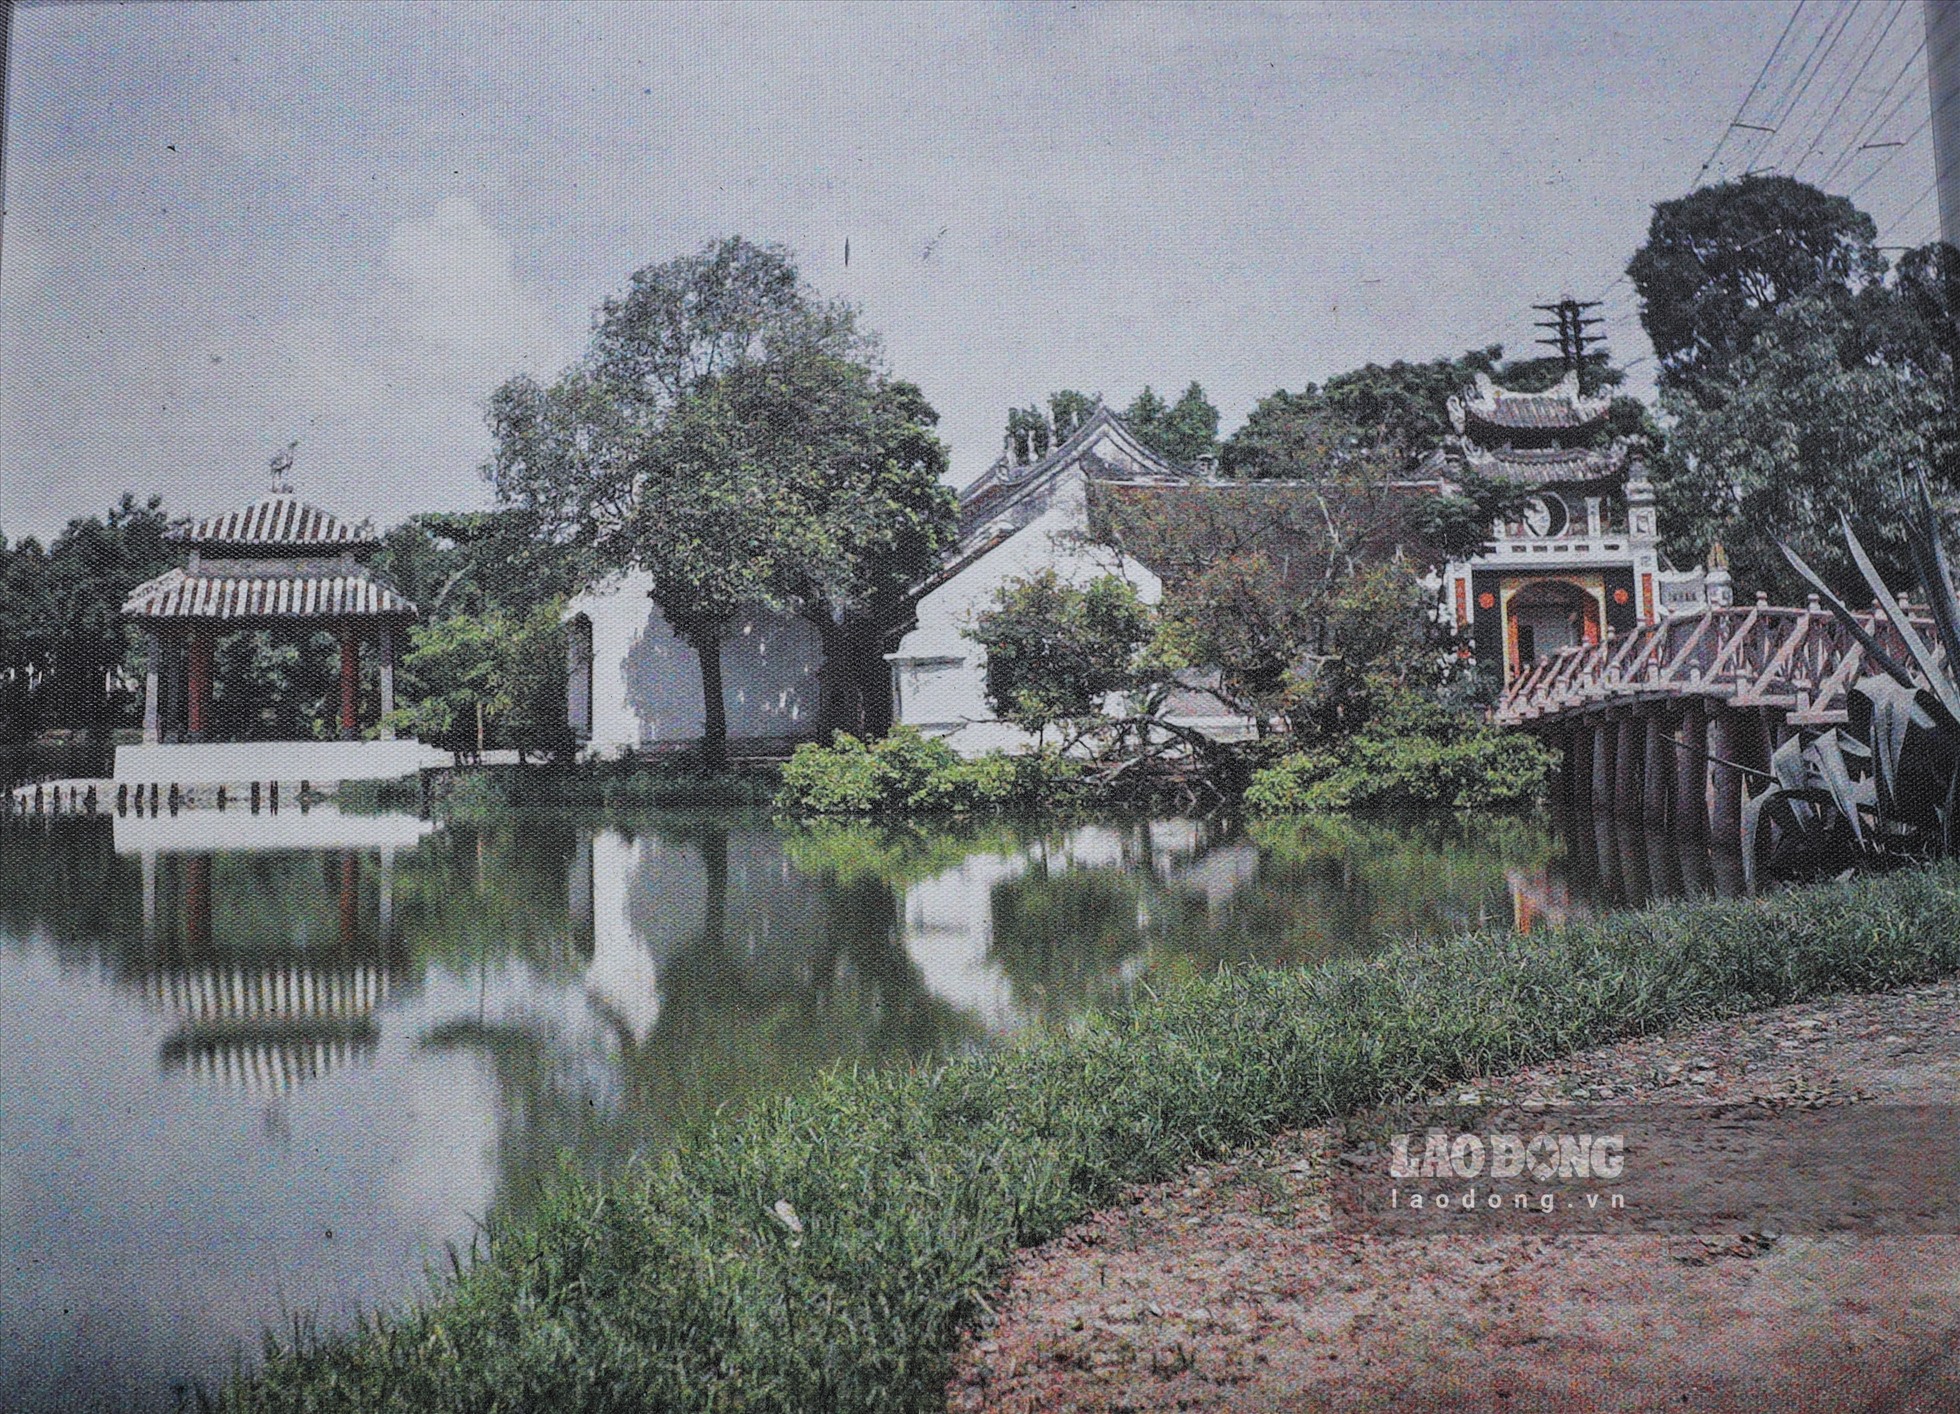 Đền Ngọc Sơn trên đảo Ngọc của hồ Hoàn Kiếm xưa. Bức ảnh cho thấy các tuyến dây điện đã kéo ra từ thời đó. Năm 1901, một nhà máy điện hơi nước được xây dựng bên hồ để cung cấp điện cho thành phố, đặc biệt là chiếu sáng công cộng.